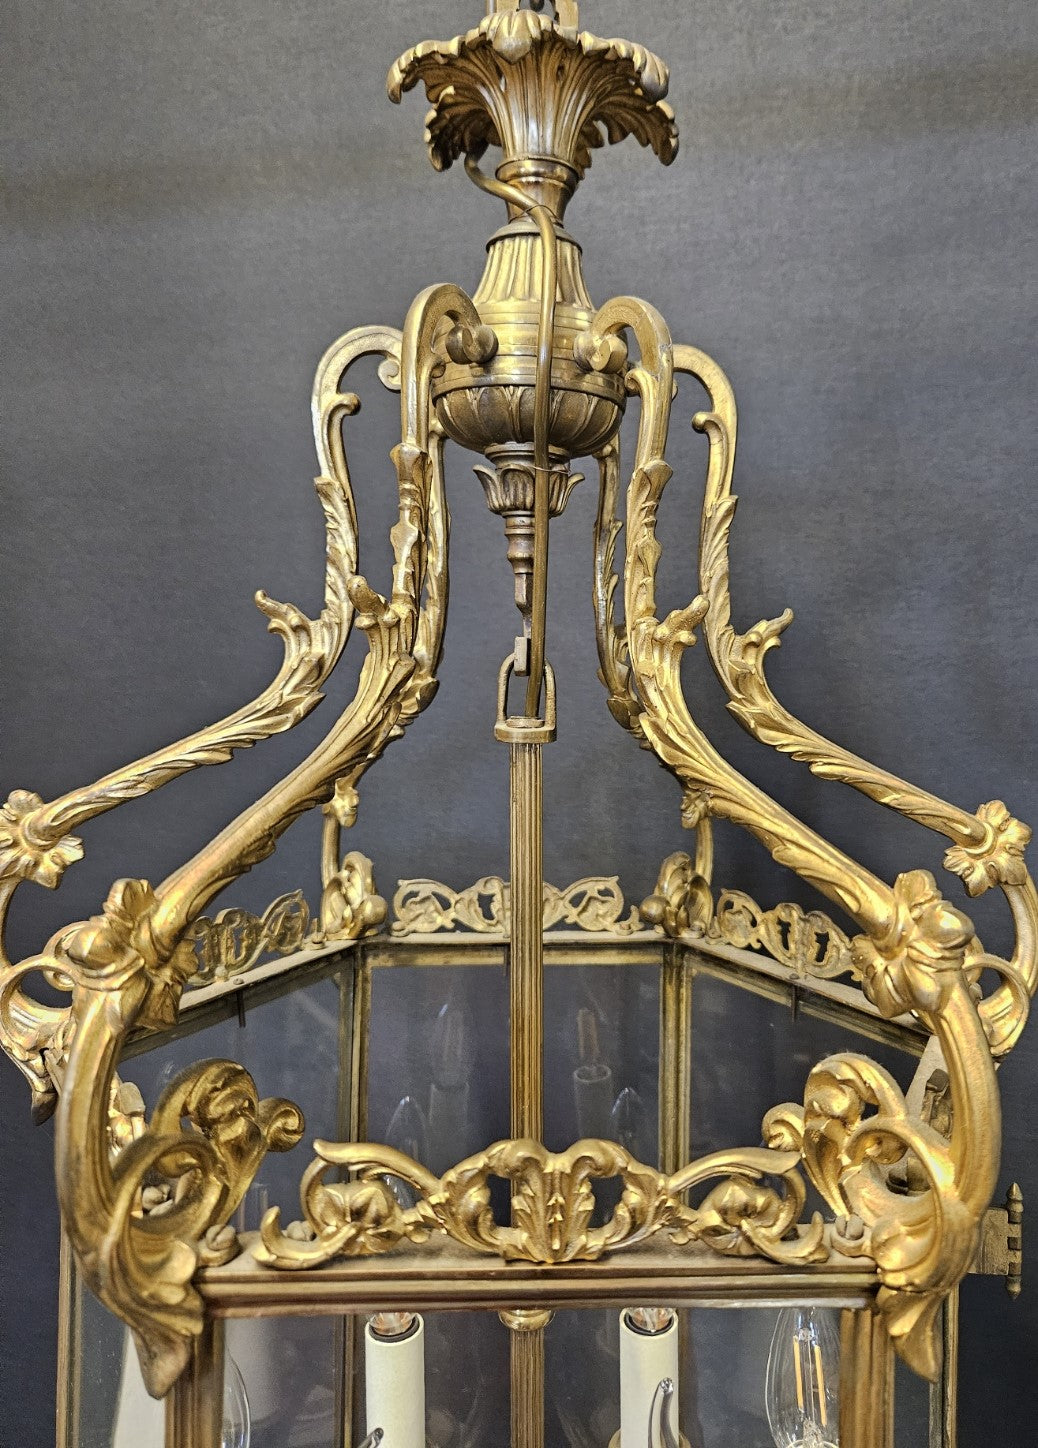 top half of lantern showing brass detailing